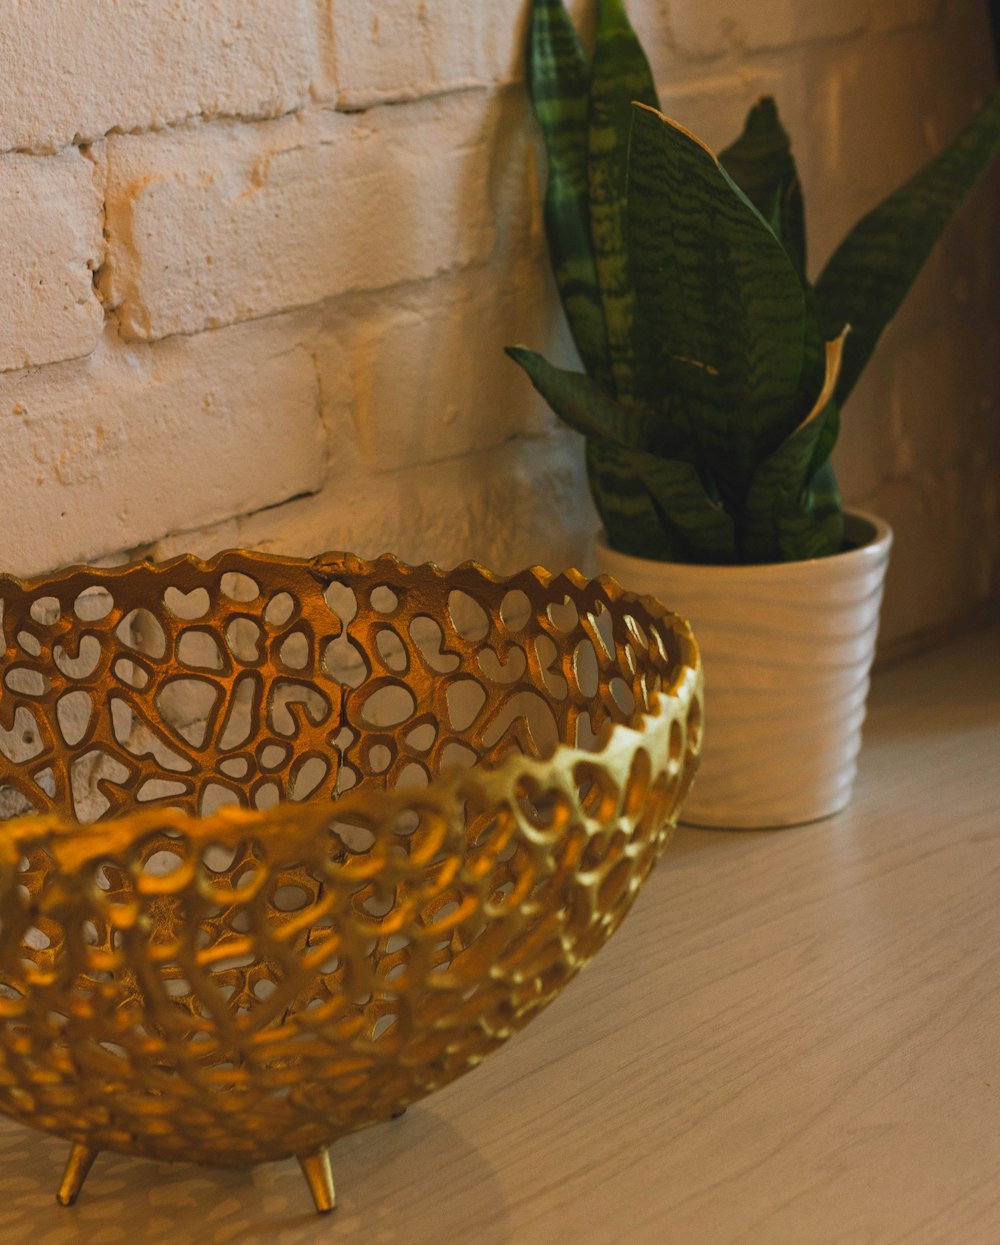 Un cuenco de oro sentado encima de una mesa junto a una planta en maceta